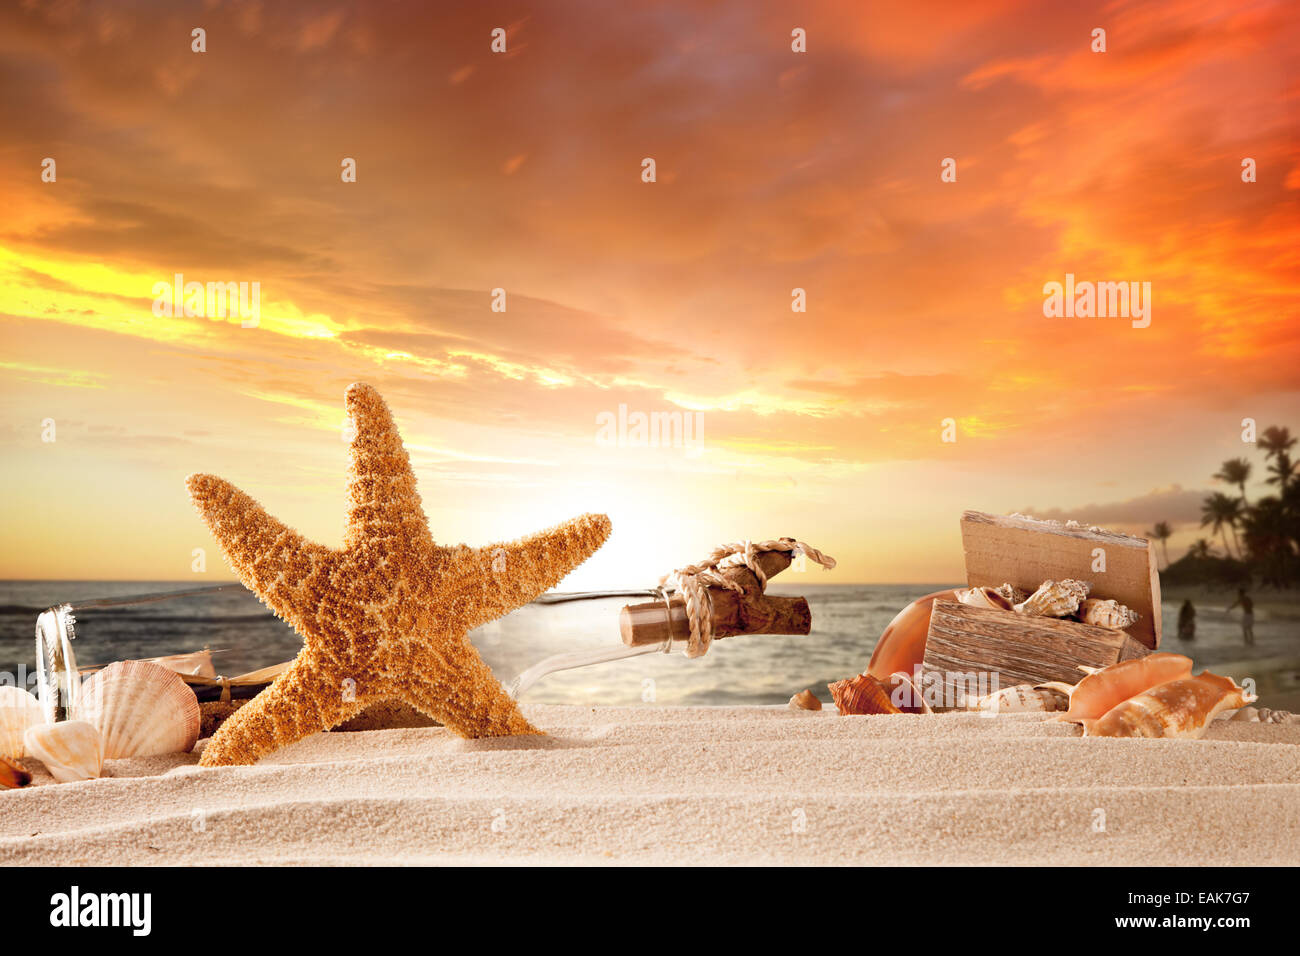 Concetto di estate con spiaggia sabbiosa, conchiglie e stelle marine. Foto Stock